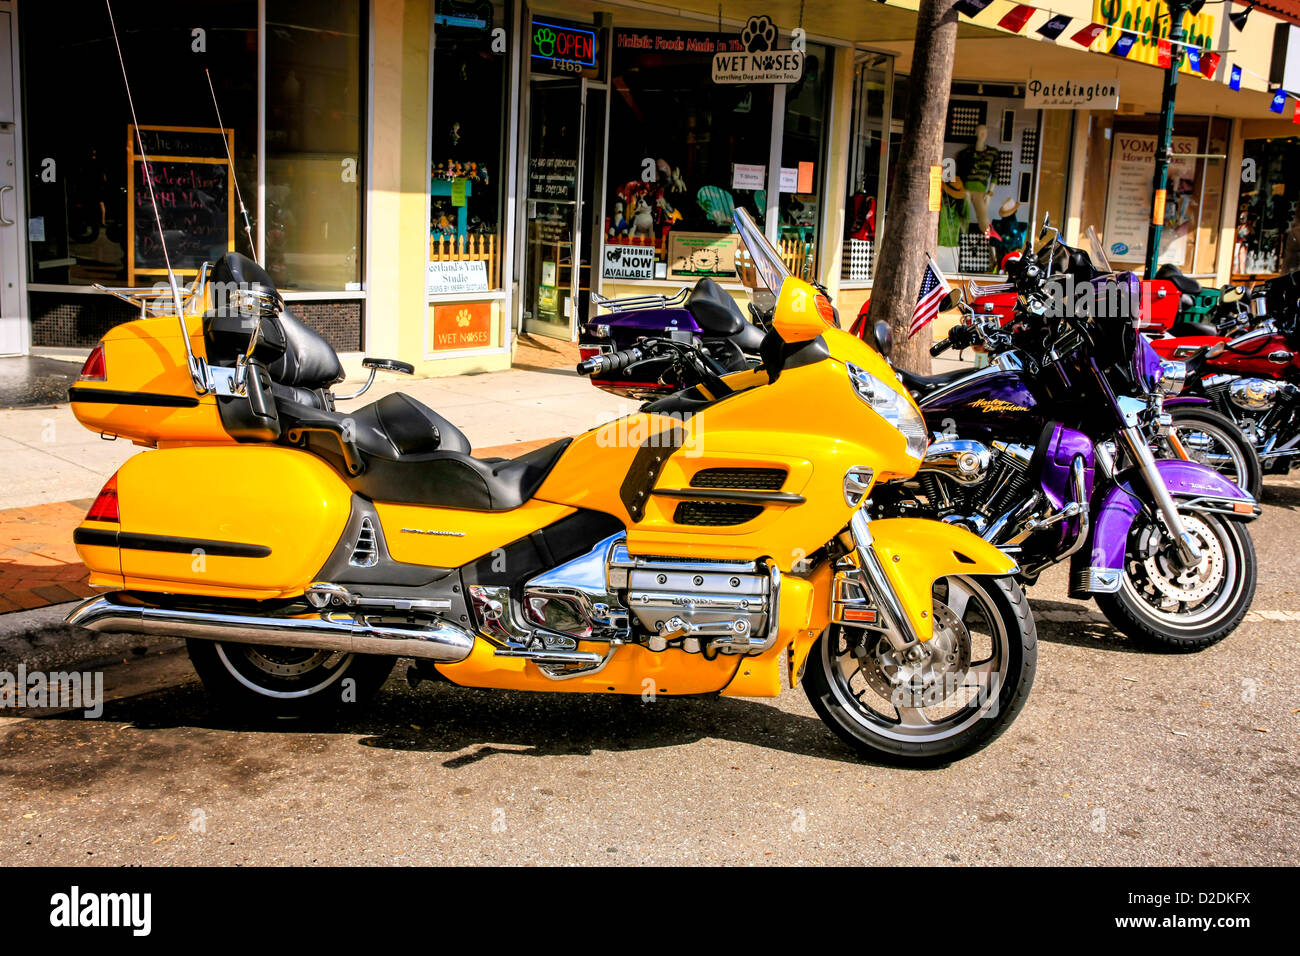 Honda Gold Wing-jaune entre les Harley's au Thunder Bay dans le cas de moto à Sarasota en Floride Banque D'Images